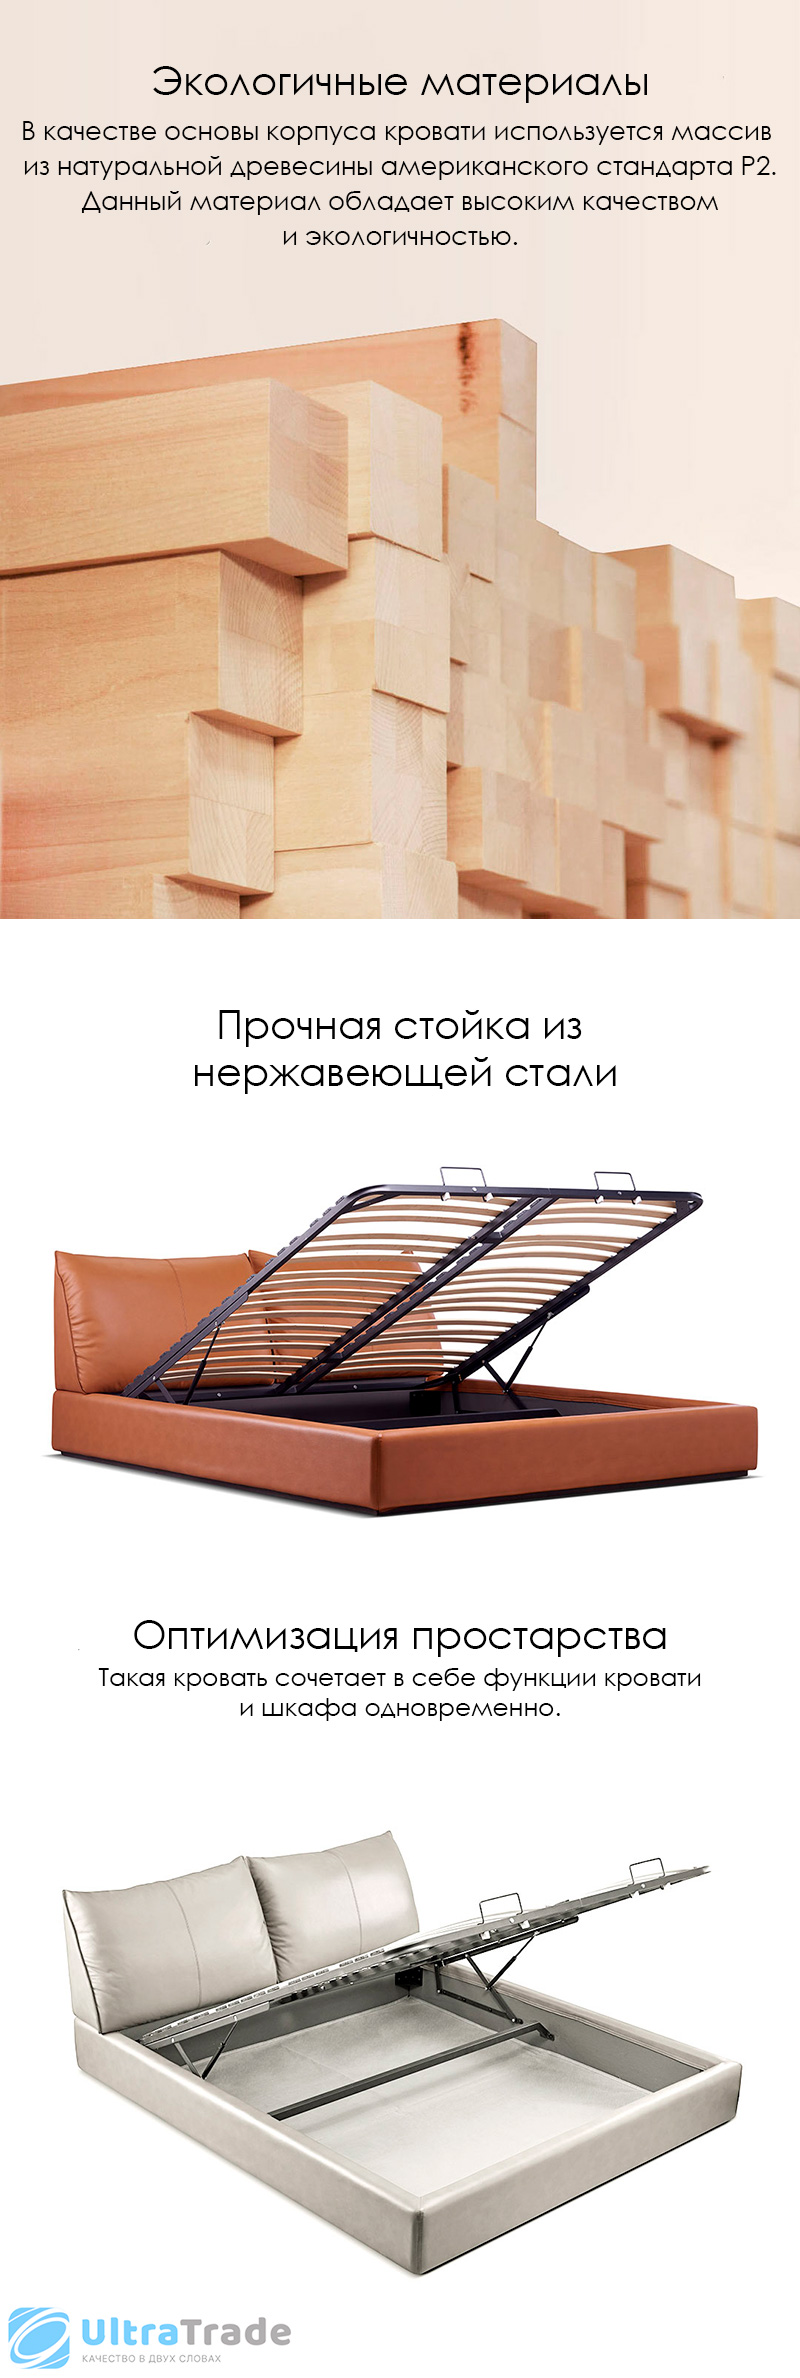 Двуспальная кровать с подъемным механизмом Xiaomi Yang Zi Look Soufflé Leather Storage Bed Set 1.5 m Orange  (1 тумбочка в комплекте)